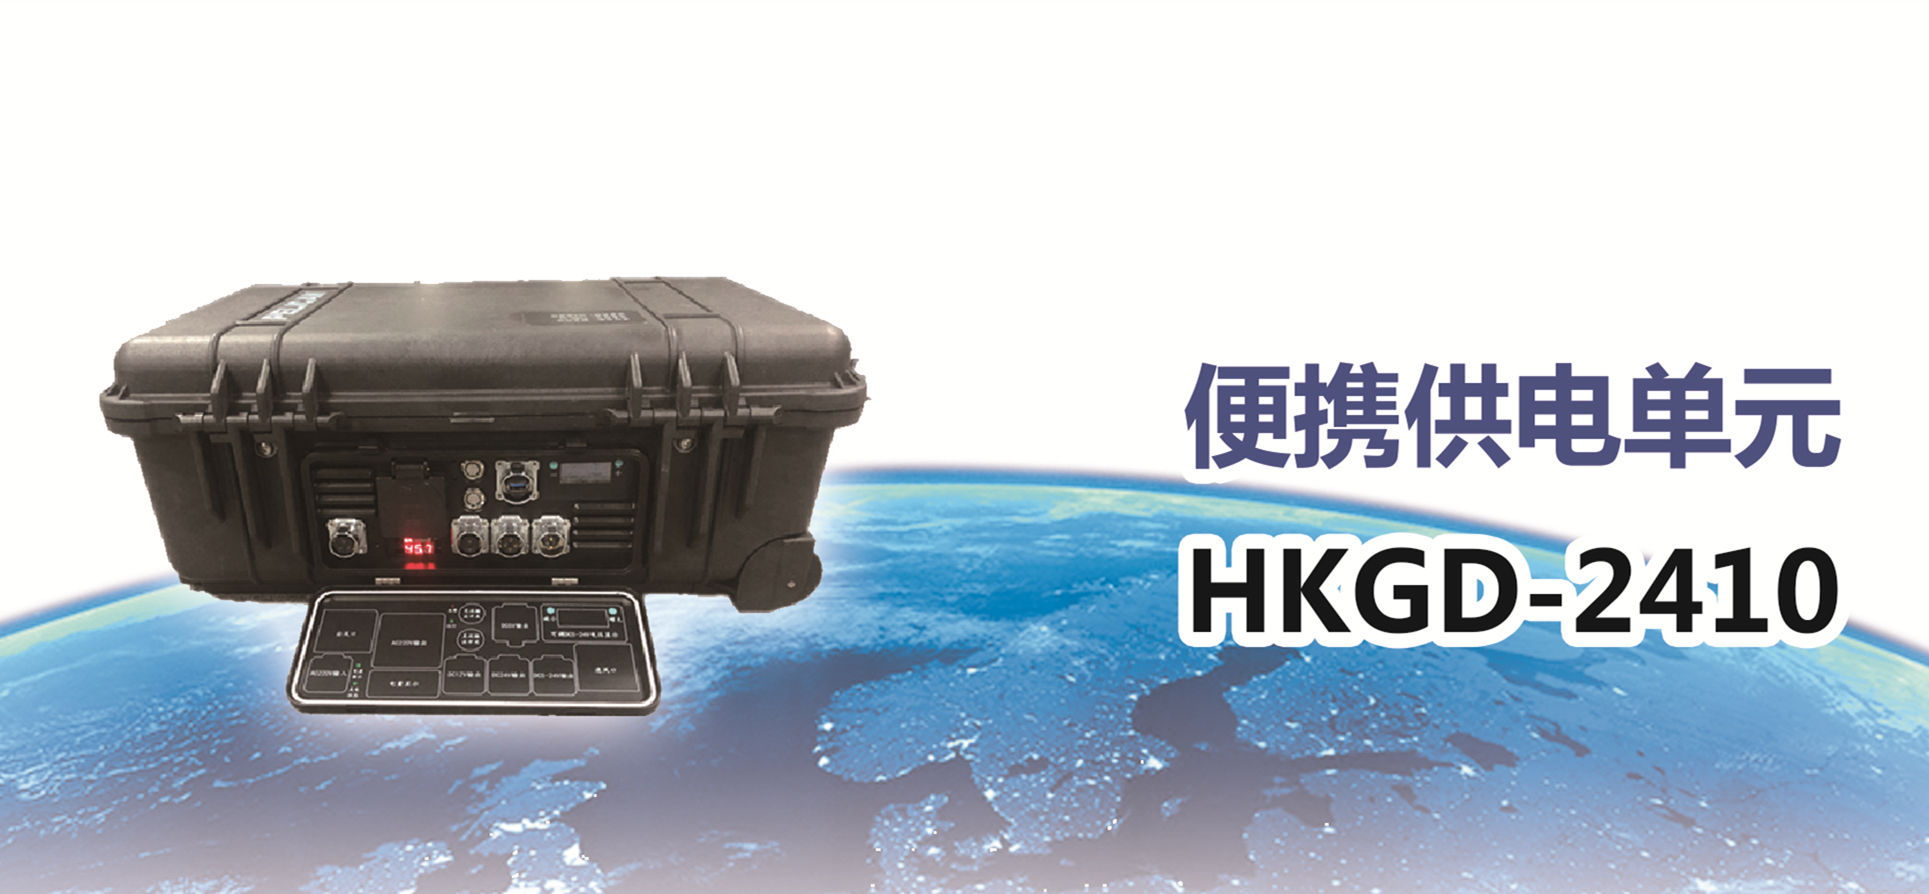 便携供电单元HKGD-2410